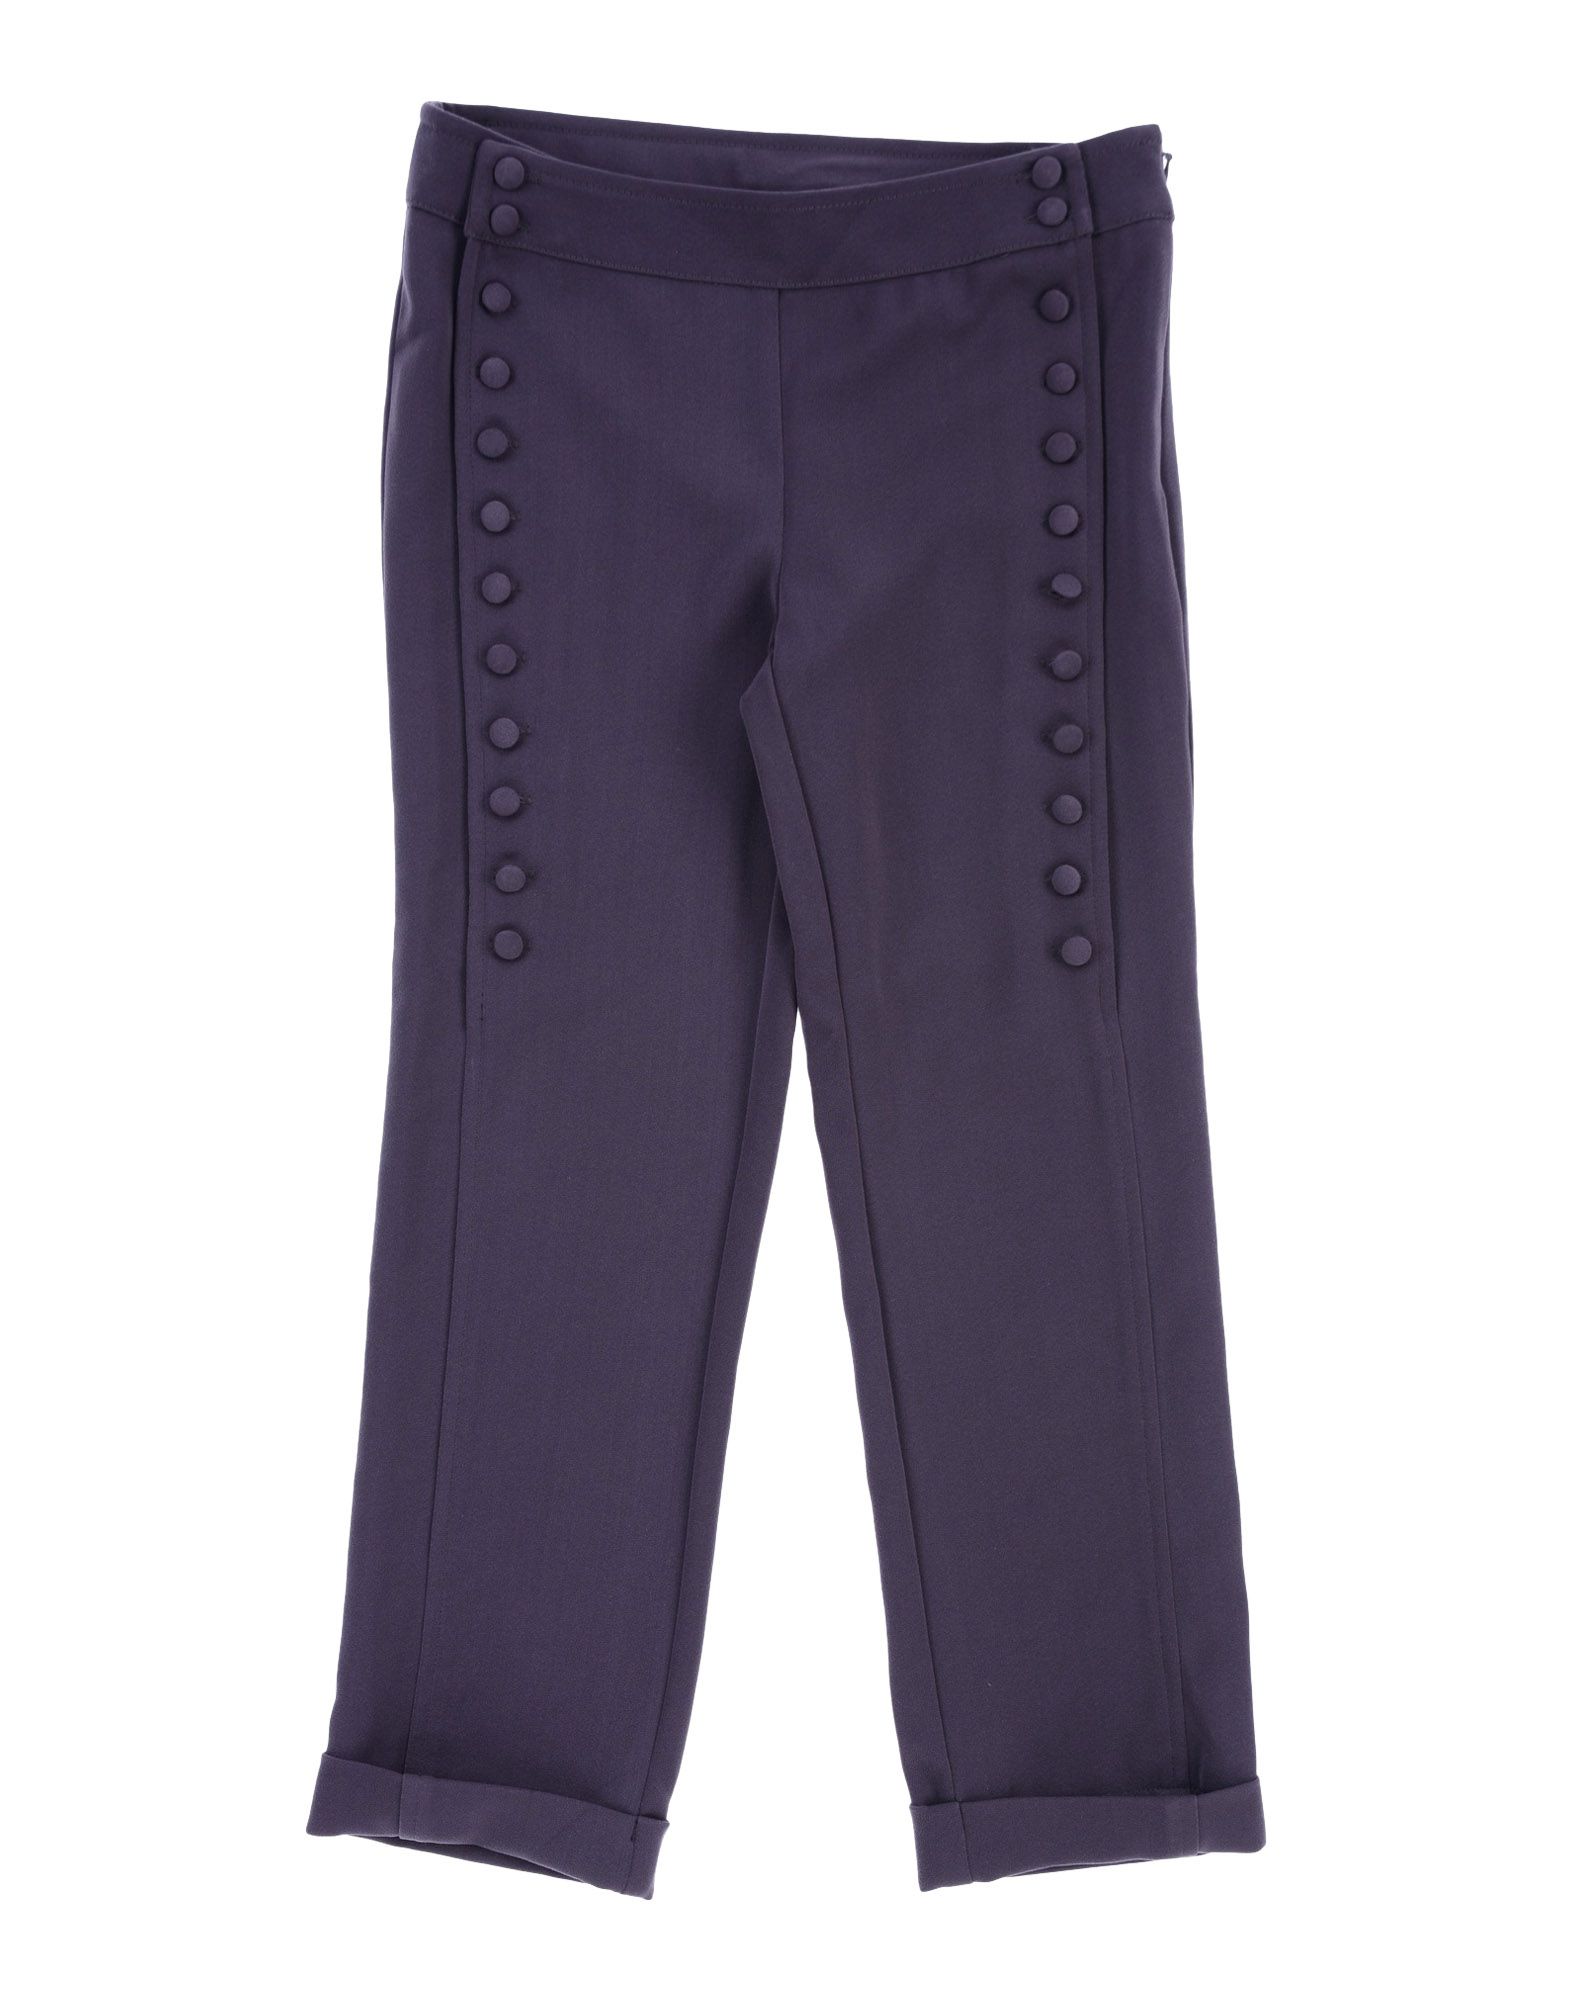 Повседневные брюки  - Темно-фиолетовый цвет